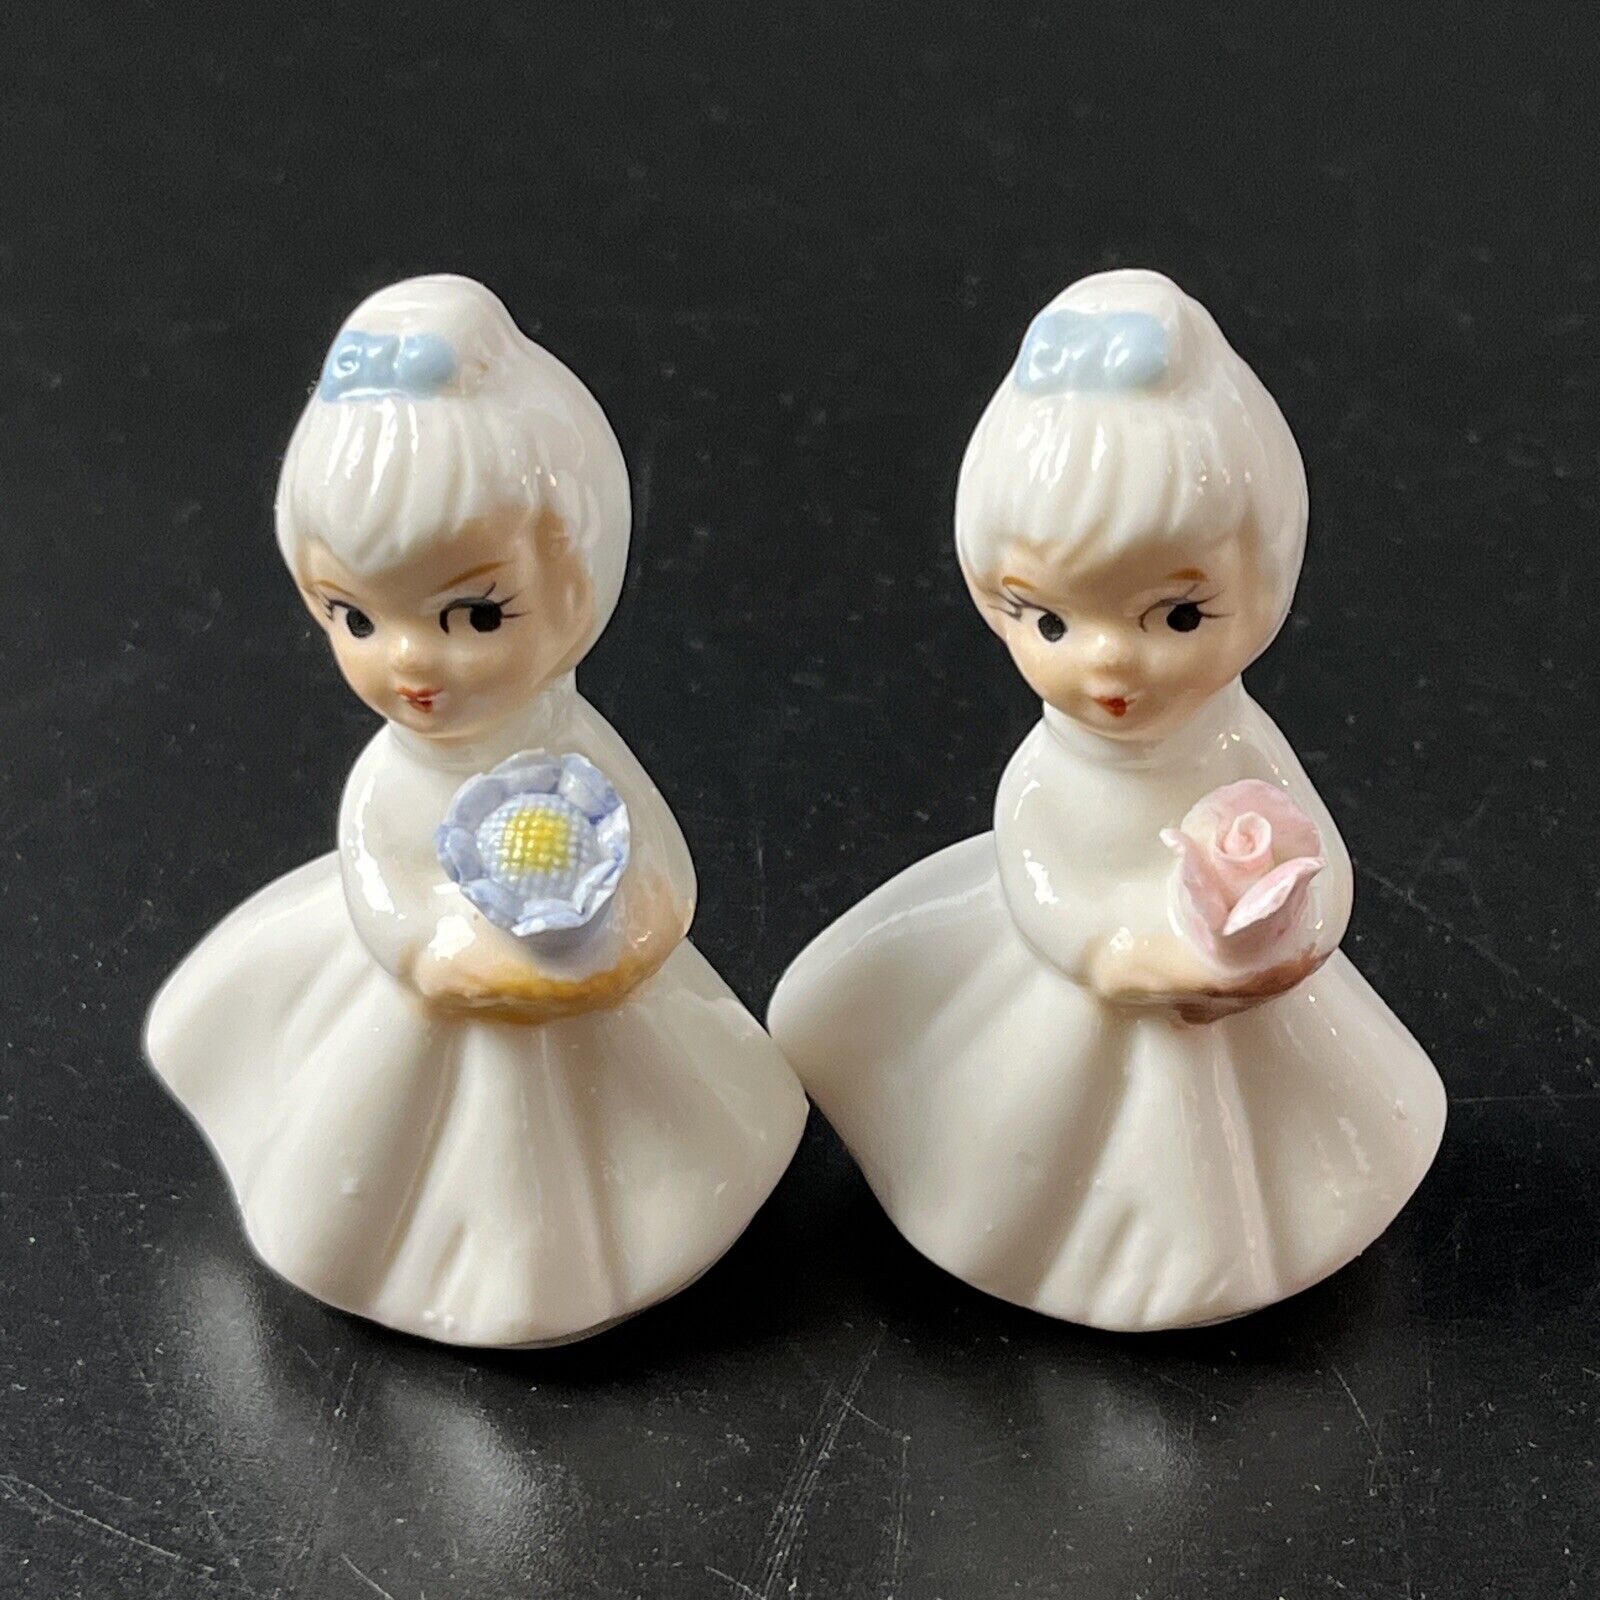 2 Vtg Napco Flower Girl of the Month Figurines Mini Porcelain Japan Rose Violet